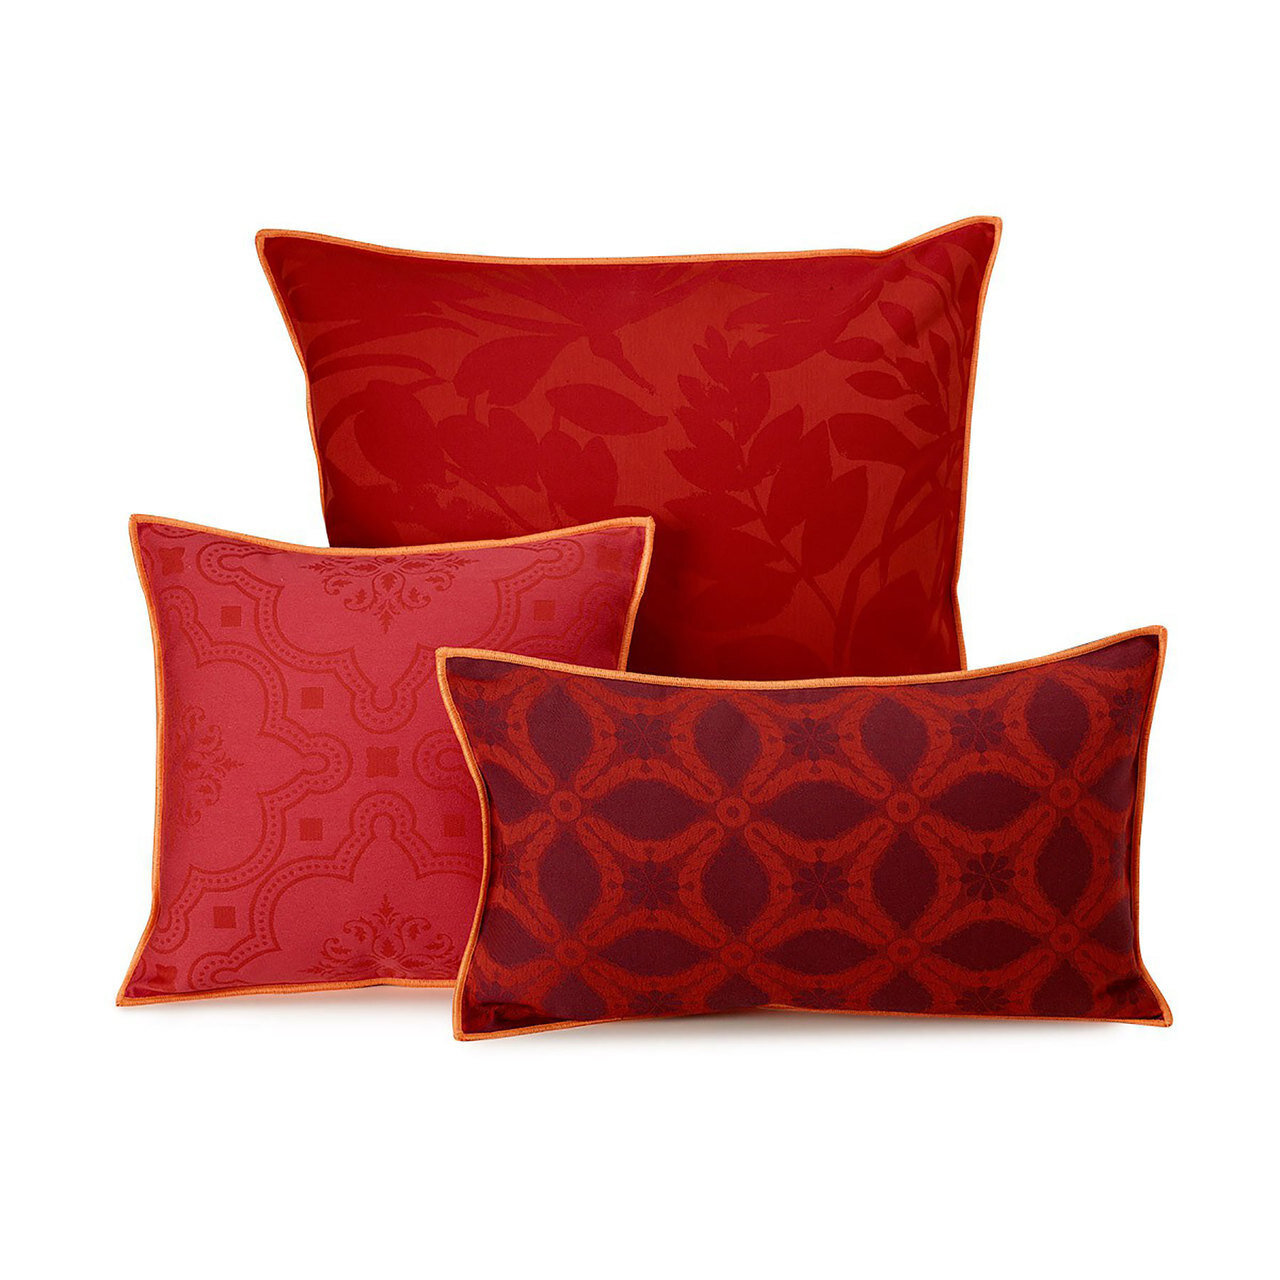 Le Jacquard Bahia Red Cushion Cover 23x23